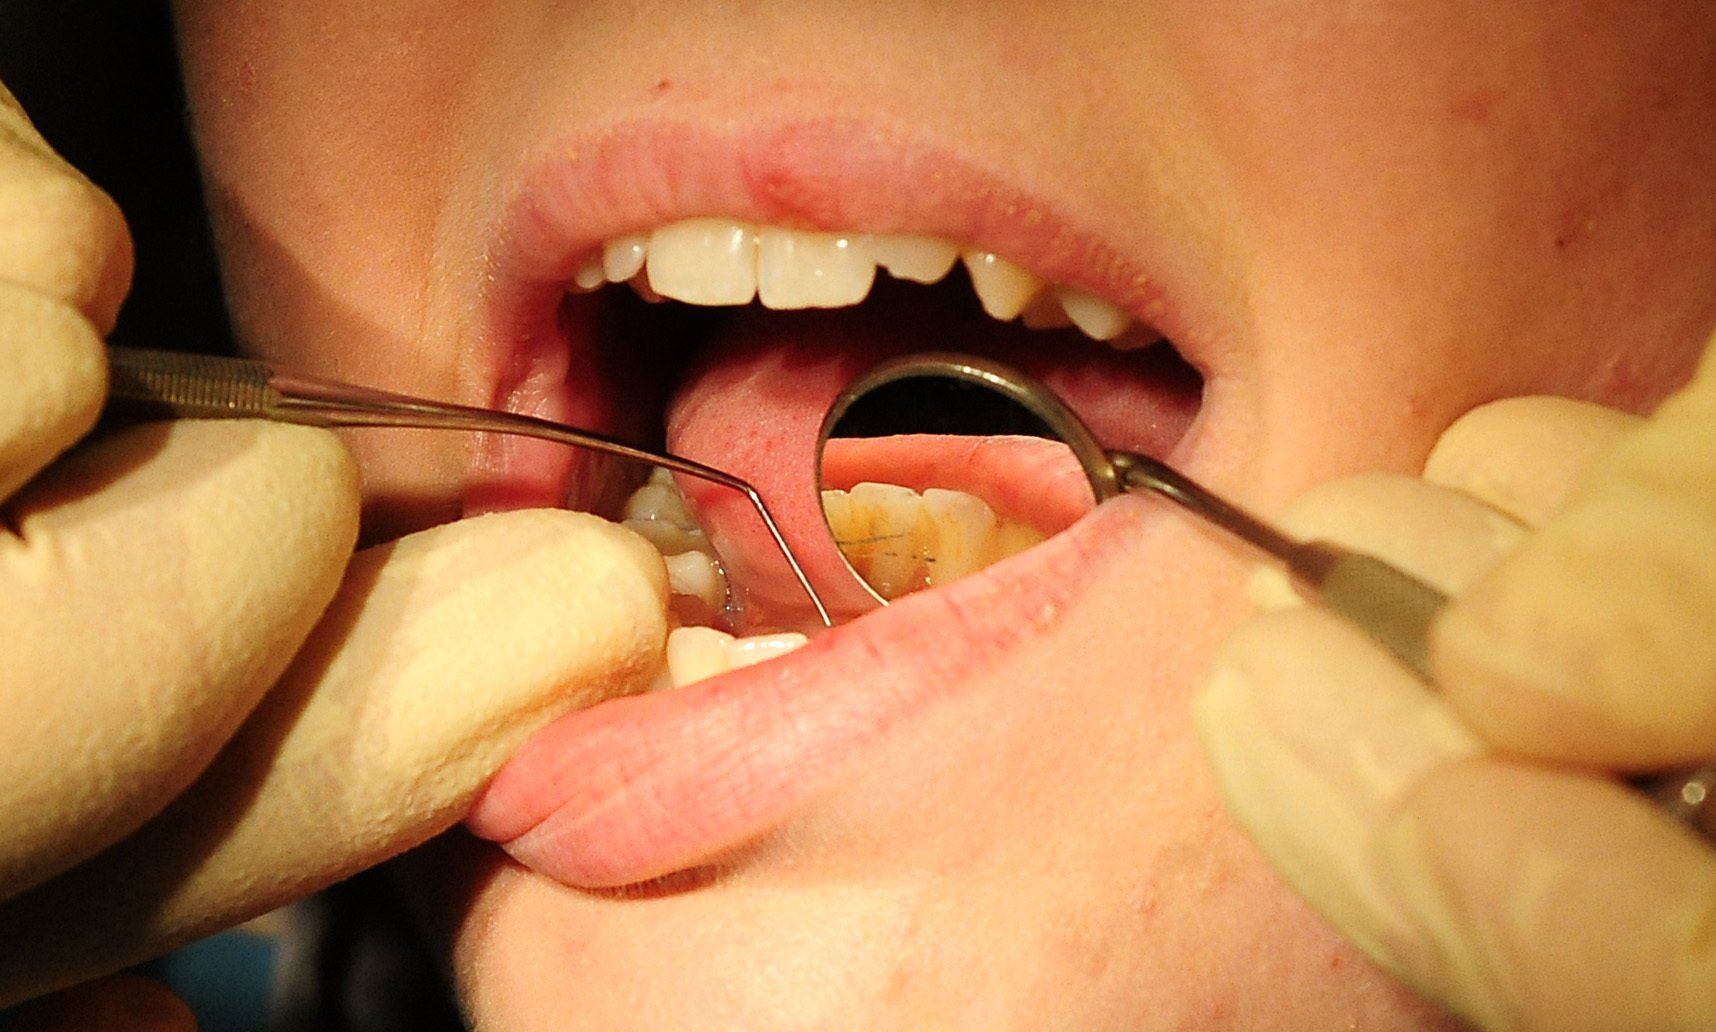 Prosthetiki Dental Laboratory - Dental Laboratory Technician - Prosthetiki  Dental Laboratory - LinkedIn